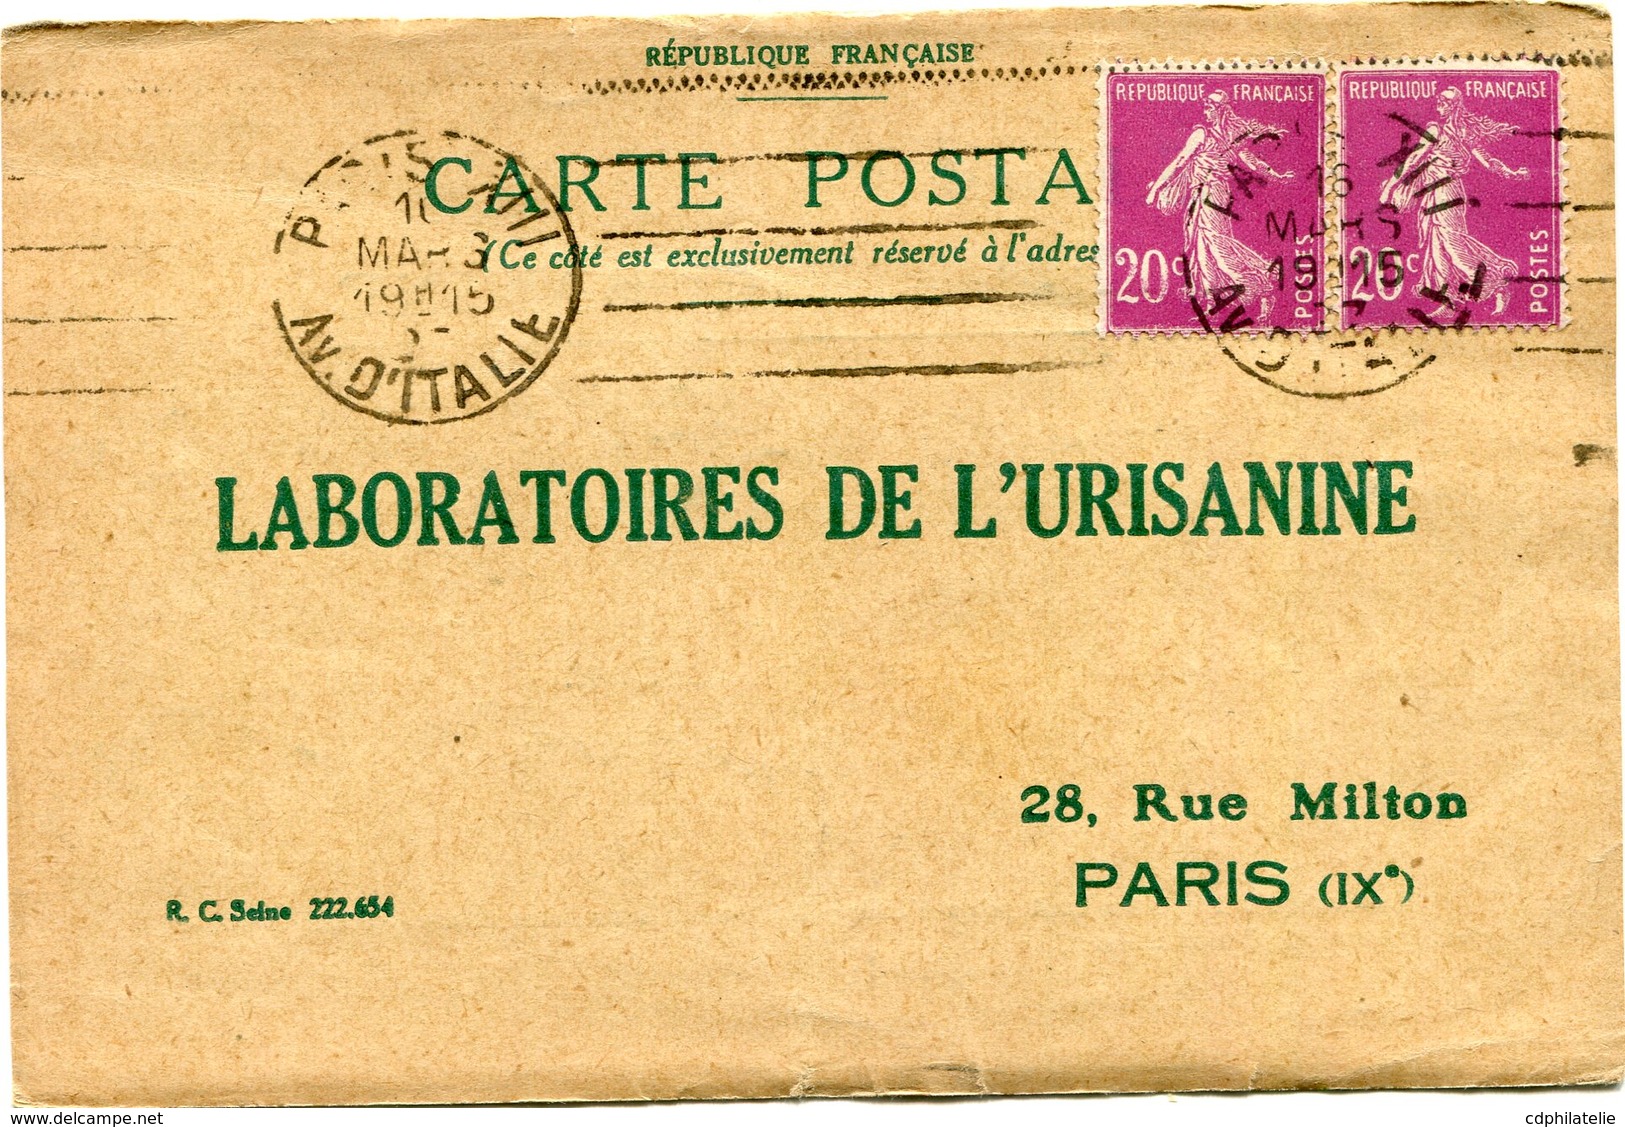 FRANCE CARTE POSTALE LABORATOIRES DE L'URISANINE BON POUR UN FLACON ECHANTILLON D'URISANINE DEPART PARIS 16 MARS 27..... - 1906-38 Säerin, Untergrund Glatt